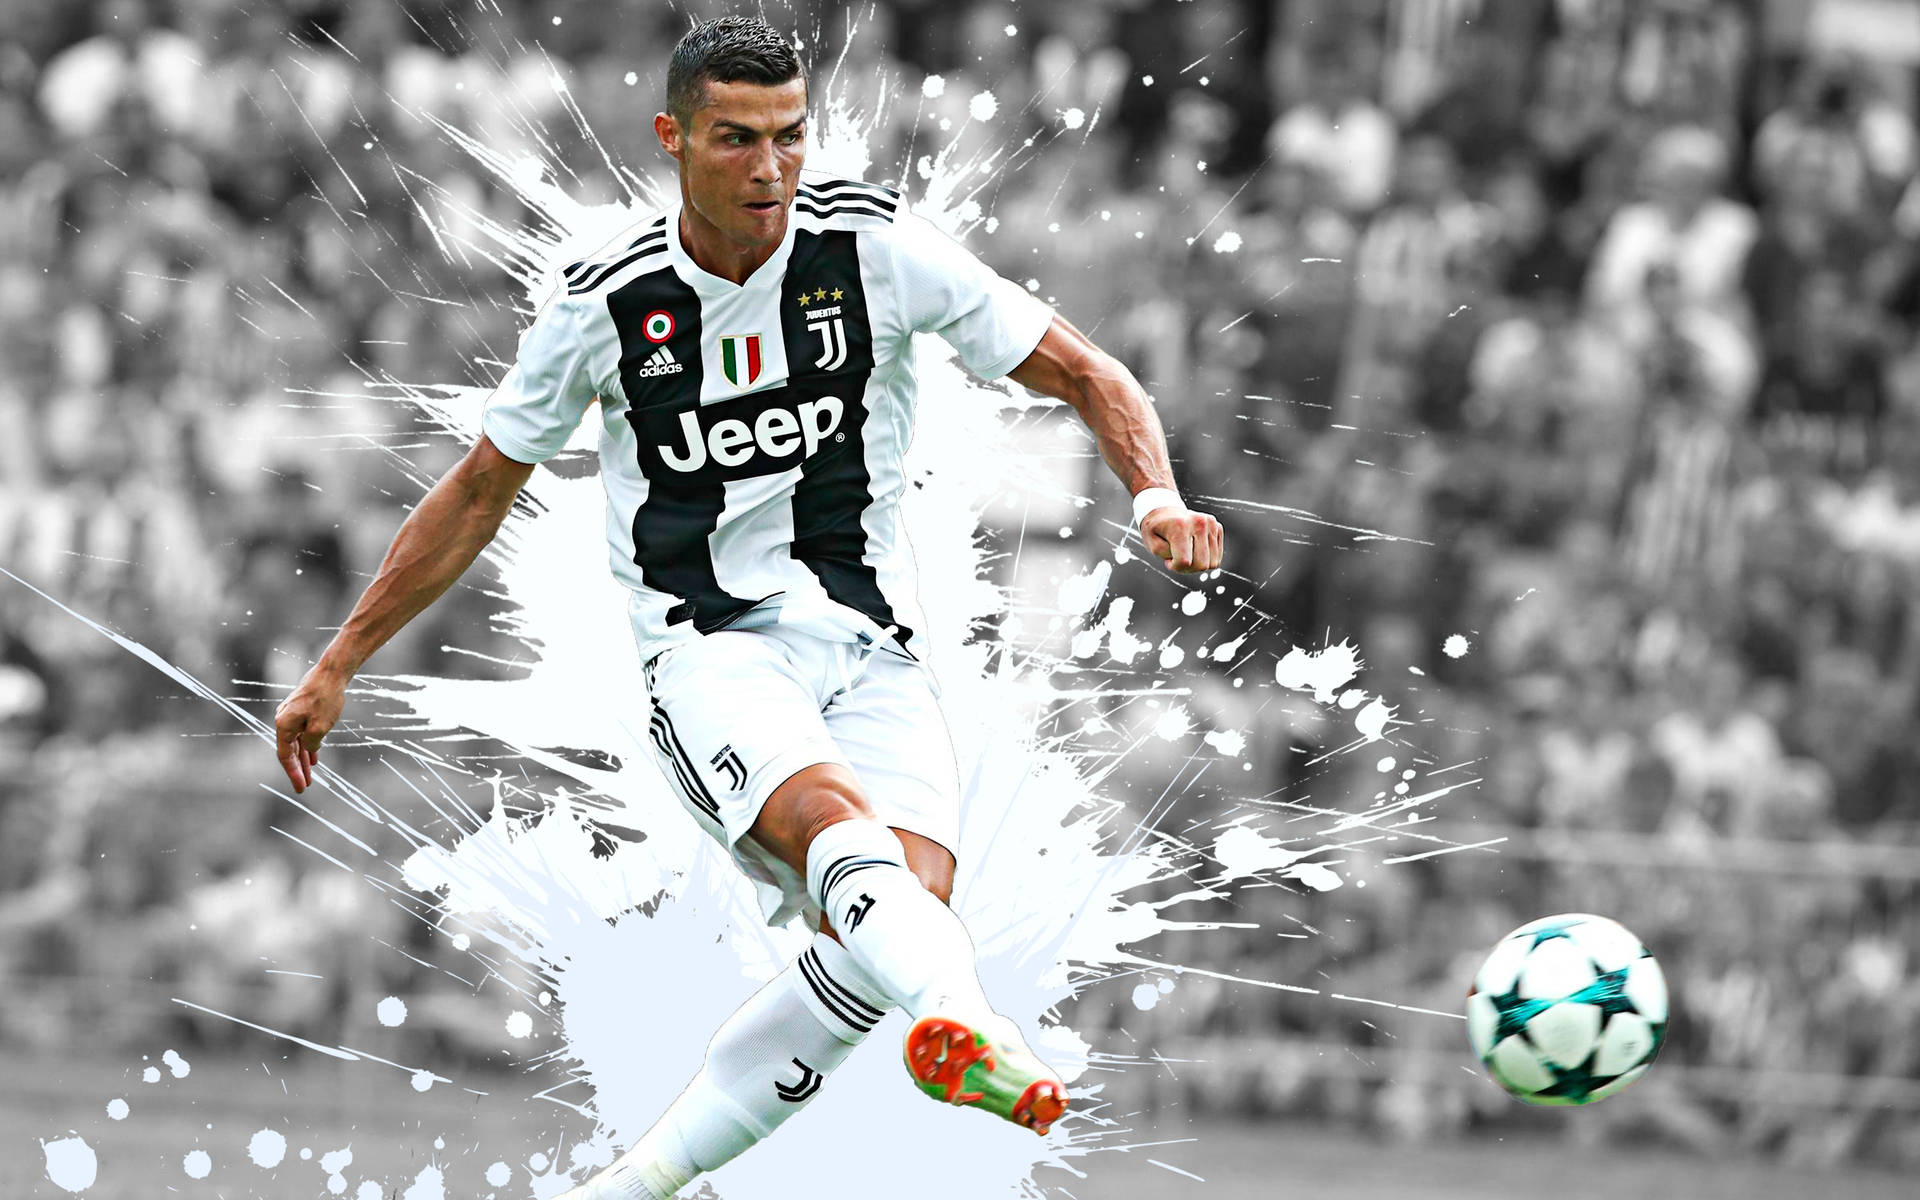 Free Cristiano Ronaldo HD 4k Wallpaper Downloads, Cristiano Ronaldo HD 4k Wallpaper for FREE